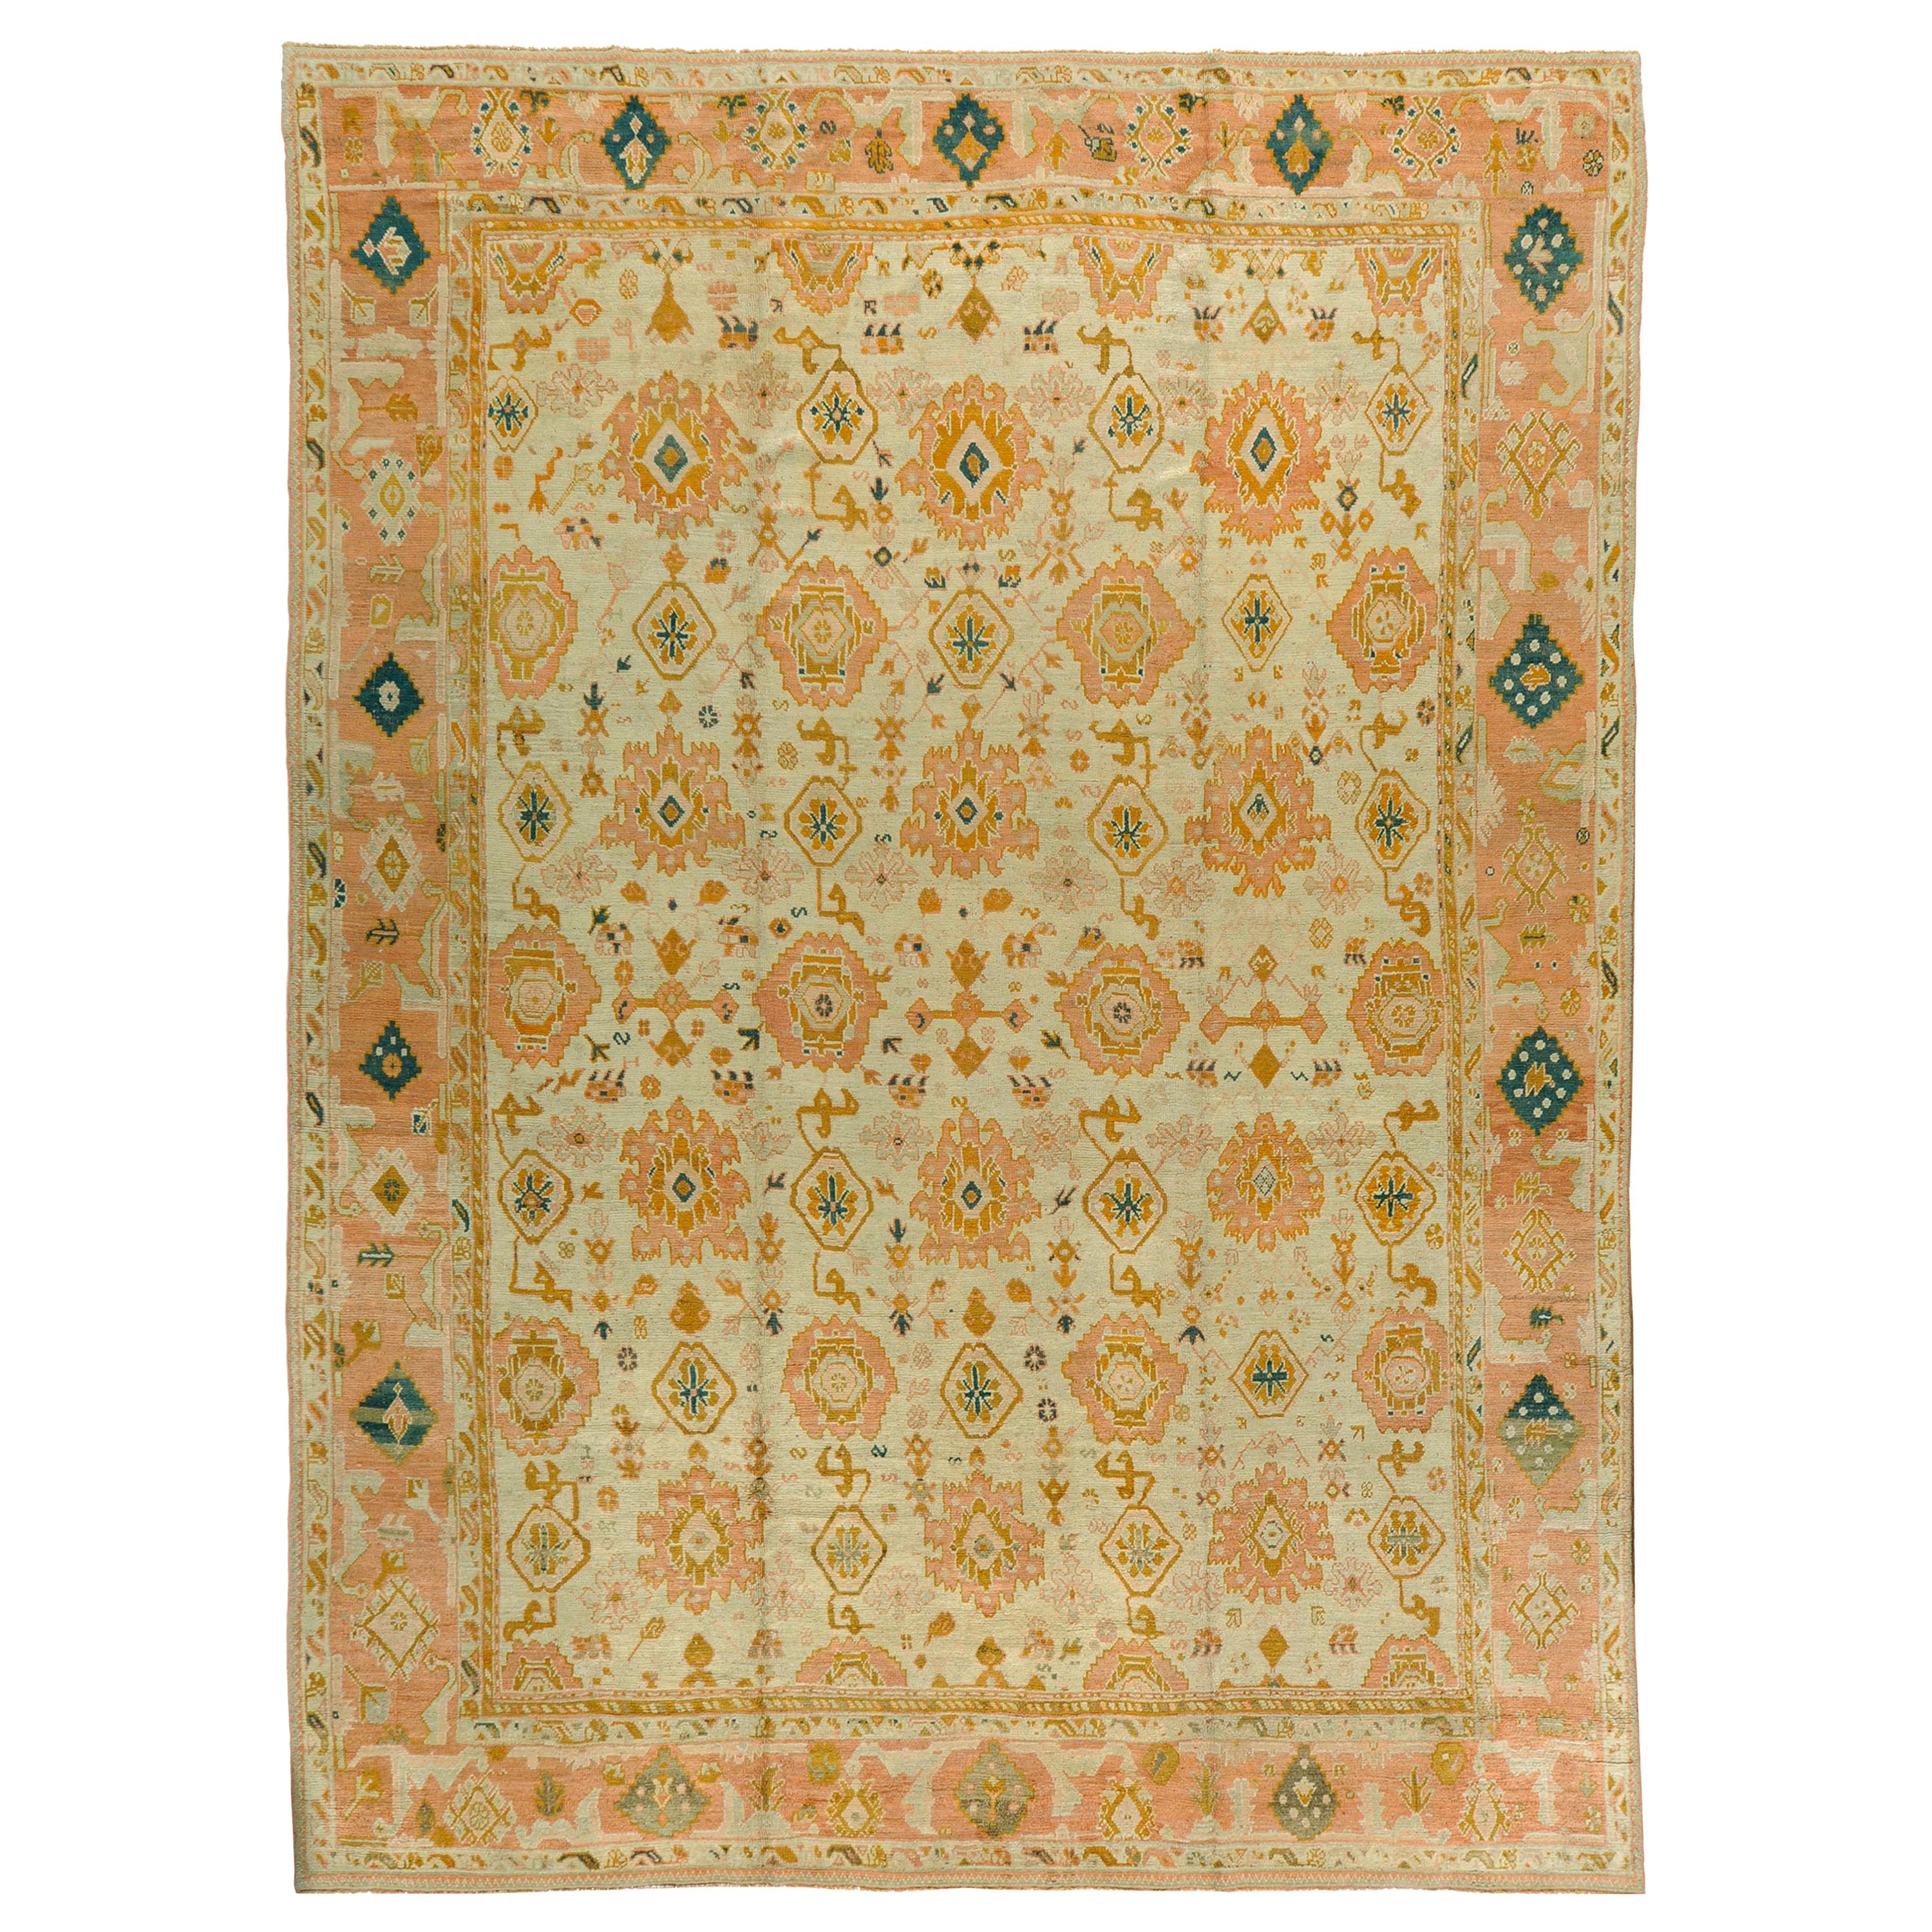 Handgewebter antiker türkischer Oushak-Teppich aus dem 19. Jahrhundert